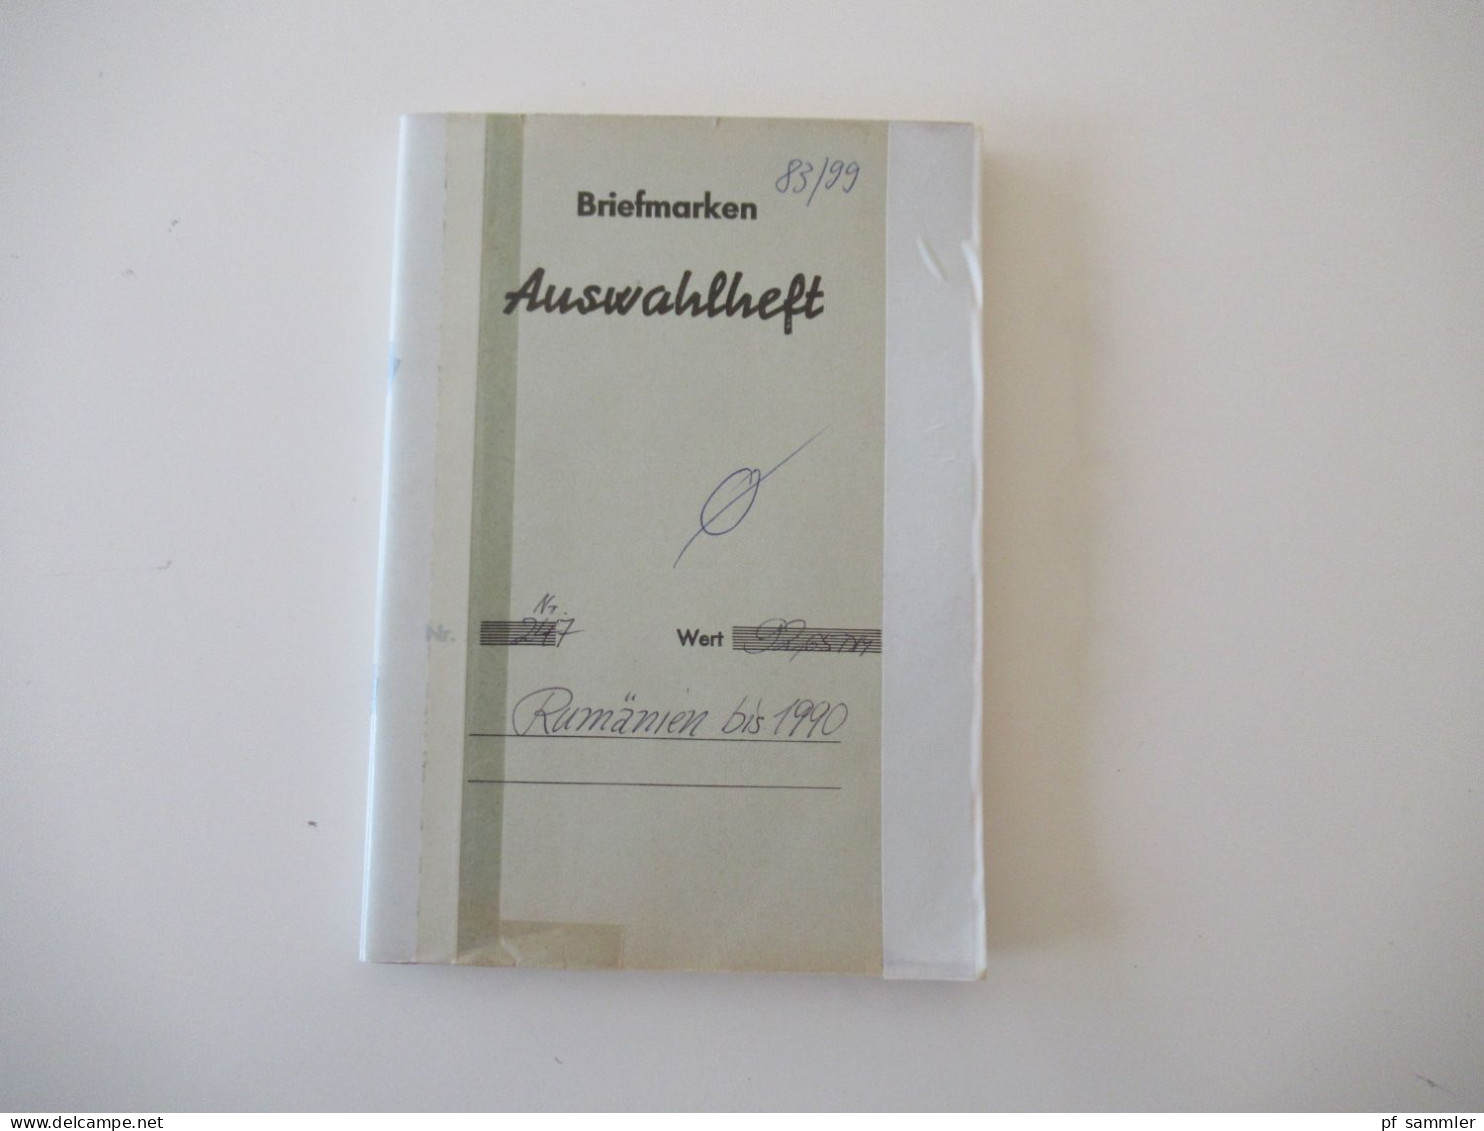 Sammlung / Interessantes Auswahlheft Rumänien Ab Ca. 1900 - 1990 Viele Gestempelte Marken / Fundgrube!?! - Sammlungen (im Alben)